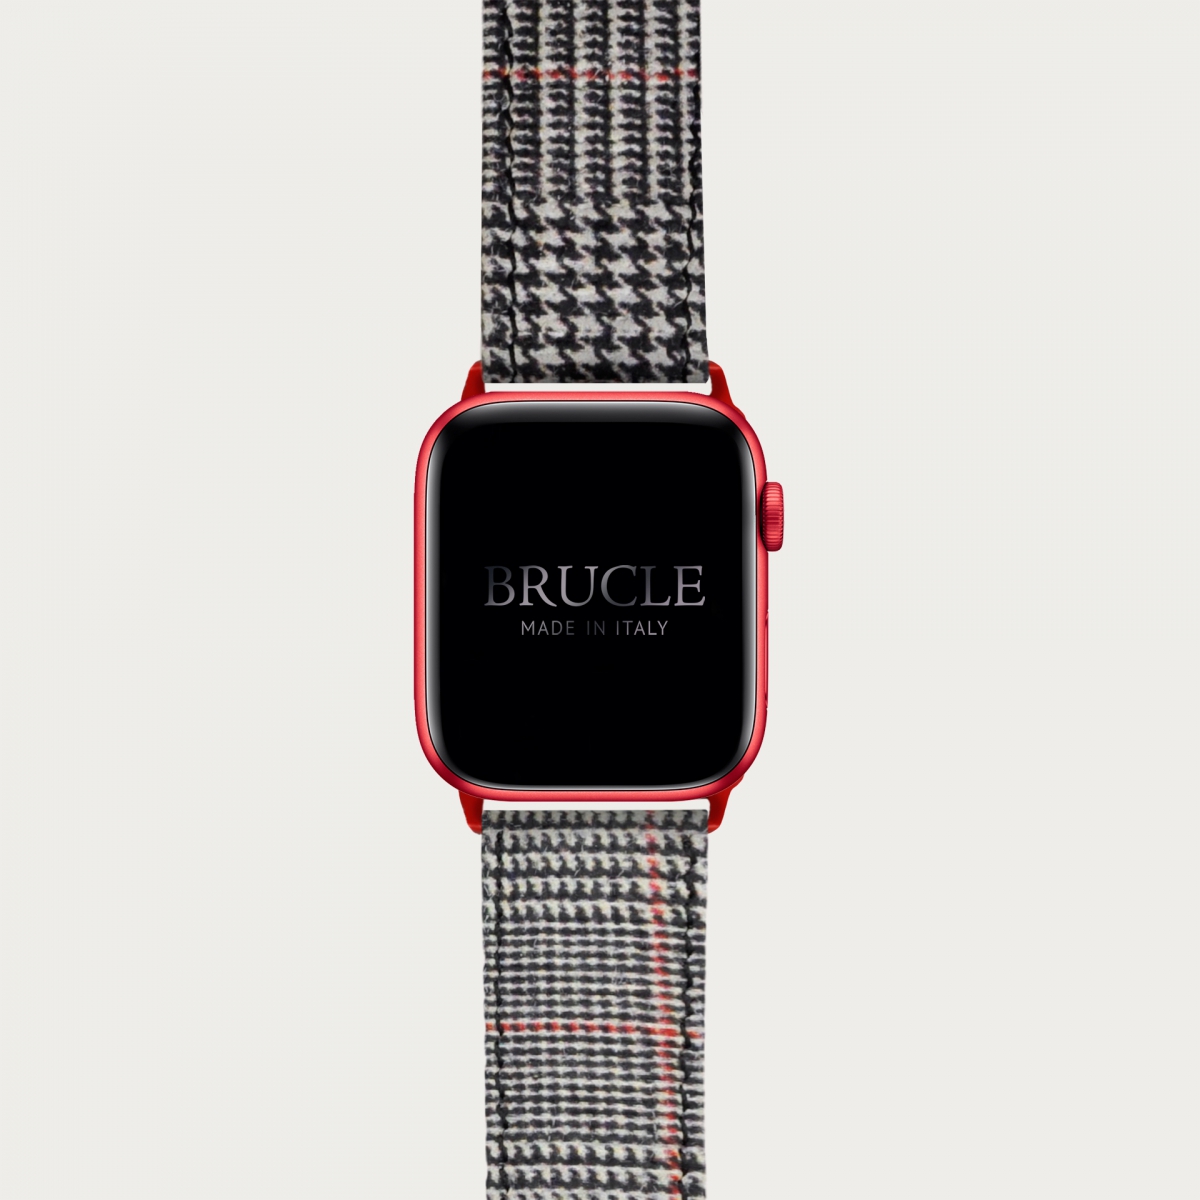 Brucle cinturino rosso in pelle stampa tartan per orologio, Compatibile con Apple Watch / Galaxy Samsung